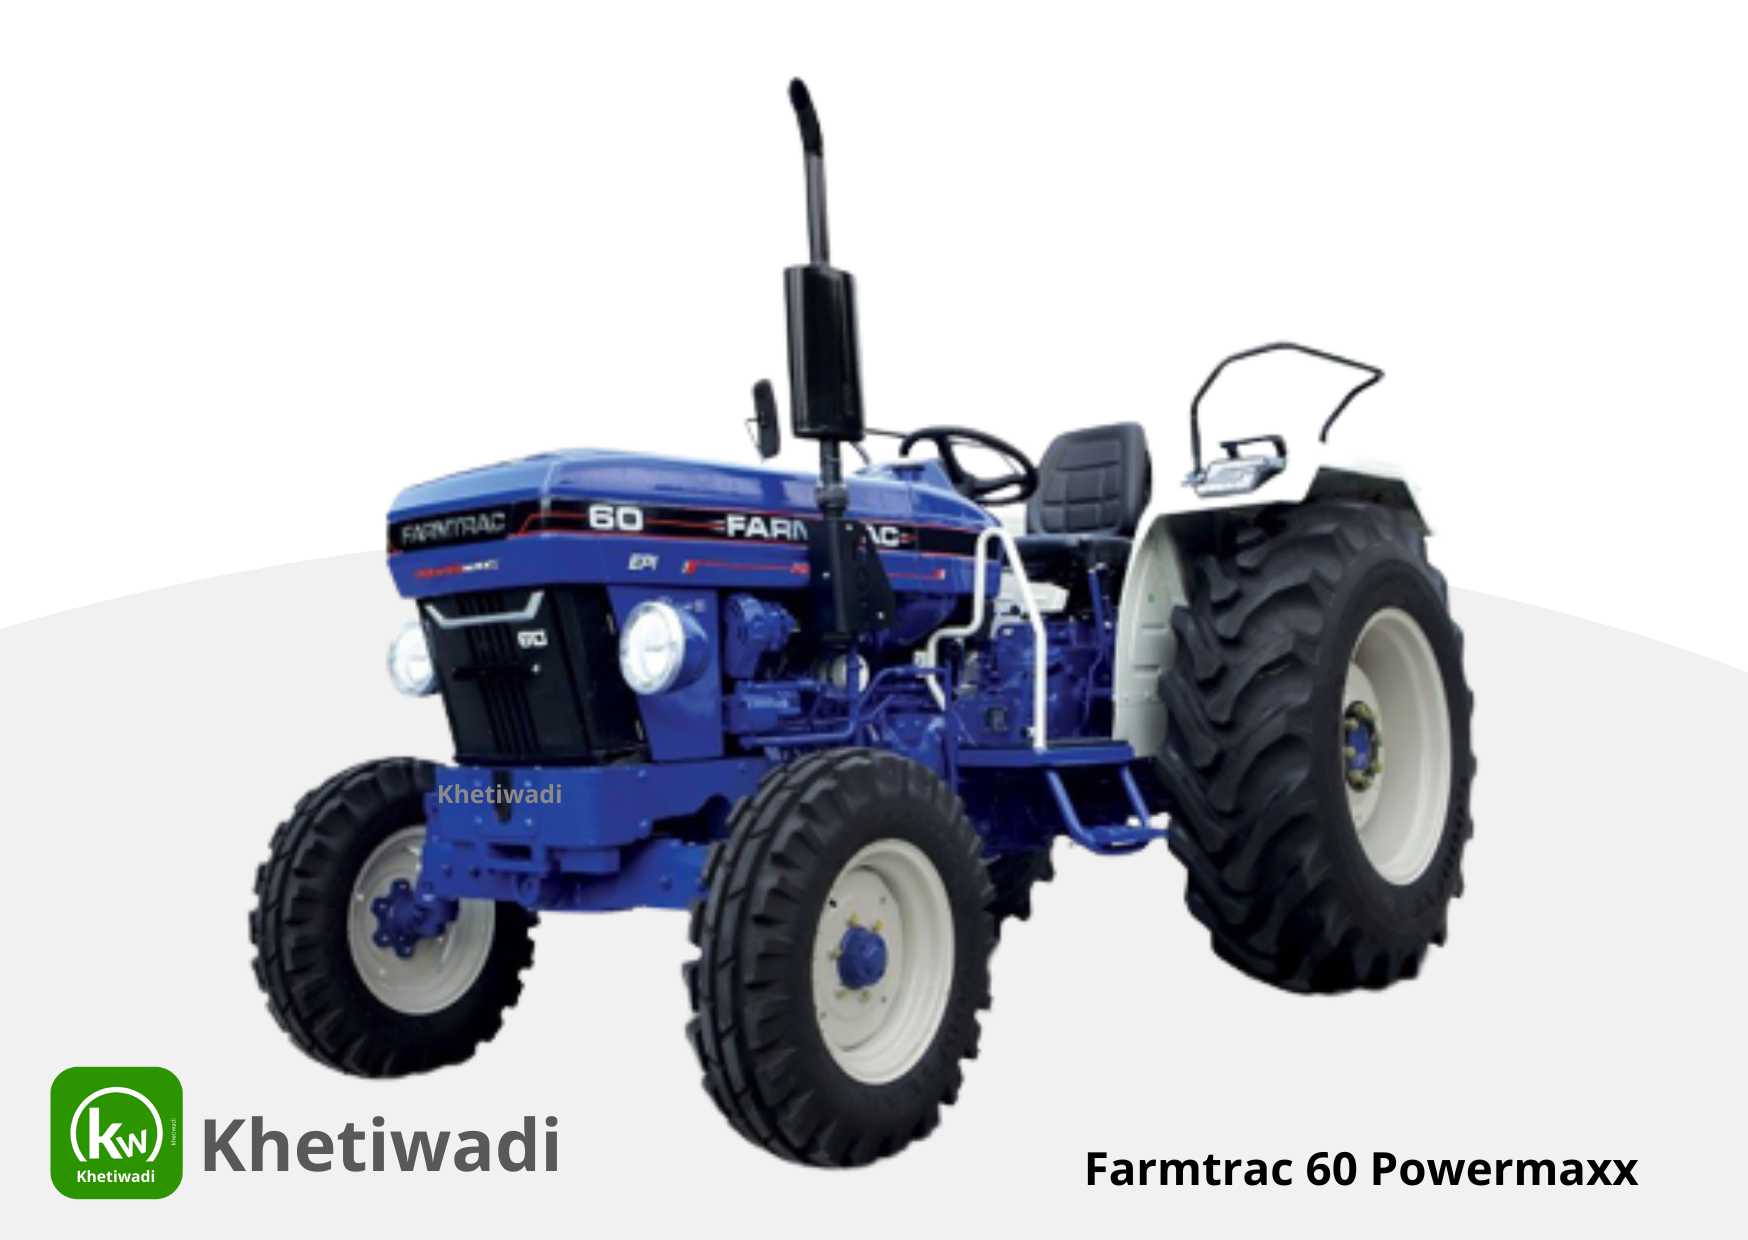 Farmtrac 60 Powermaxx full detail